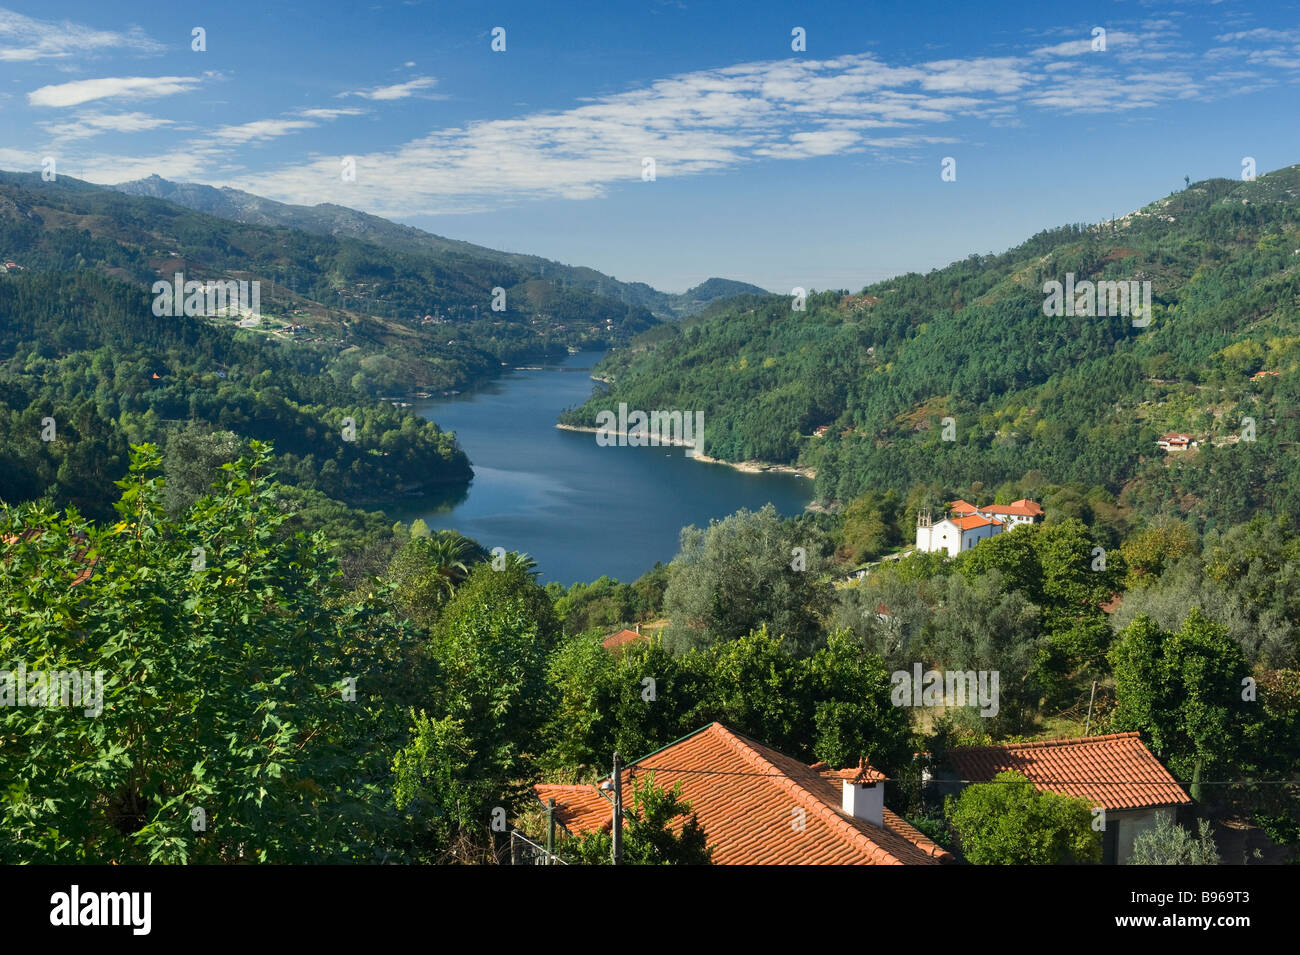 Le Portugal, district de Trás os Montes, parc national de Peneda Gerês, montagnes et lac Canicada Banque D'Images